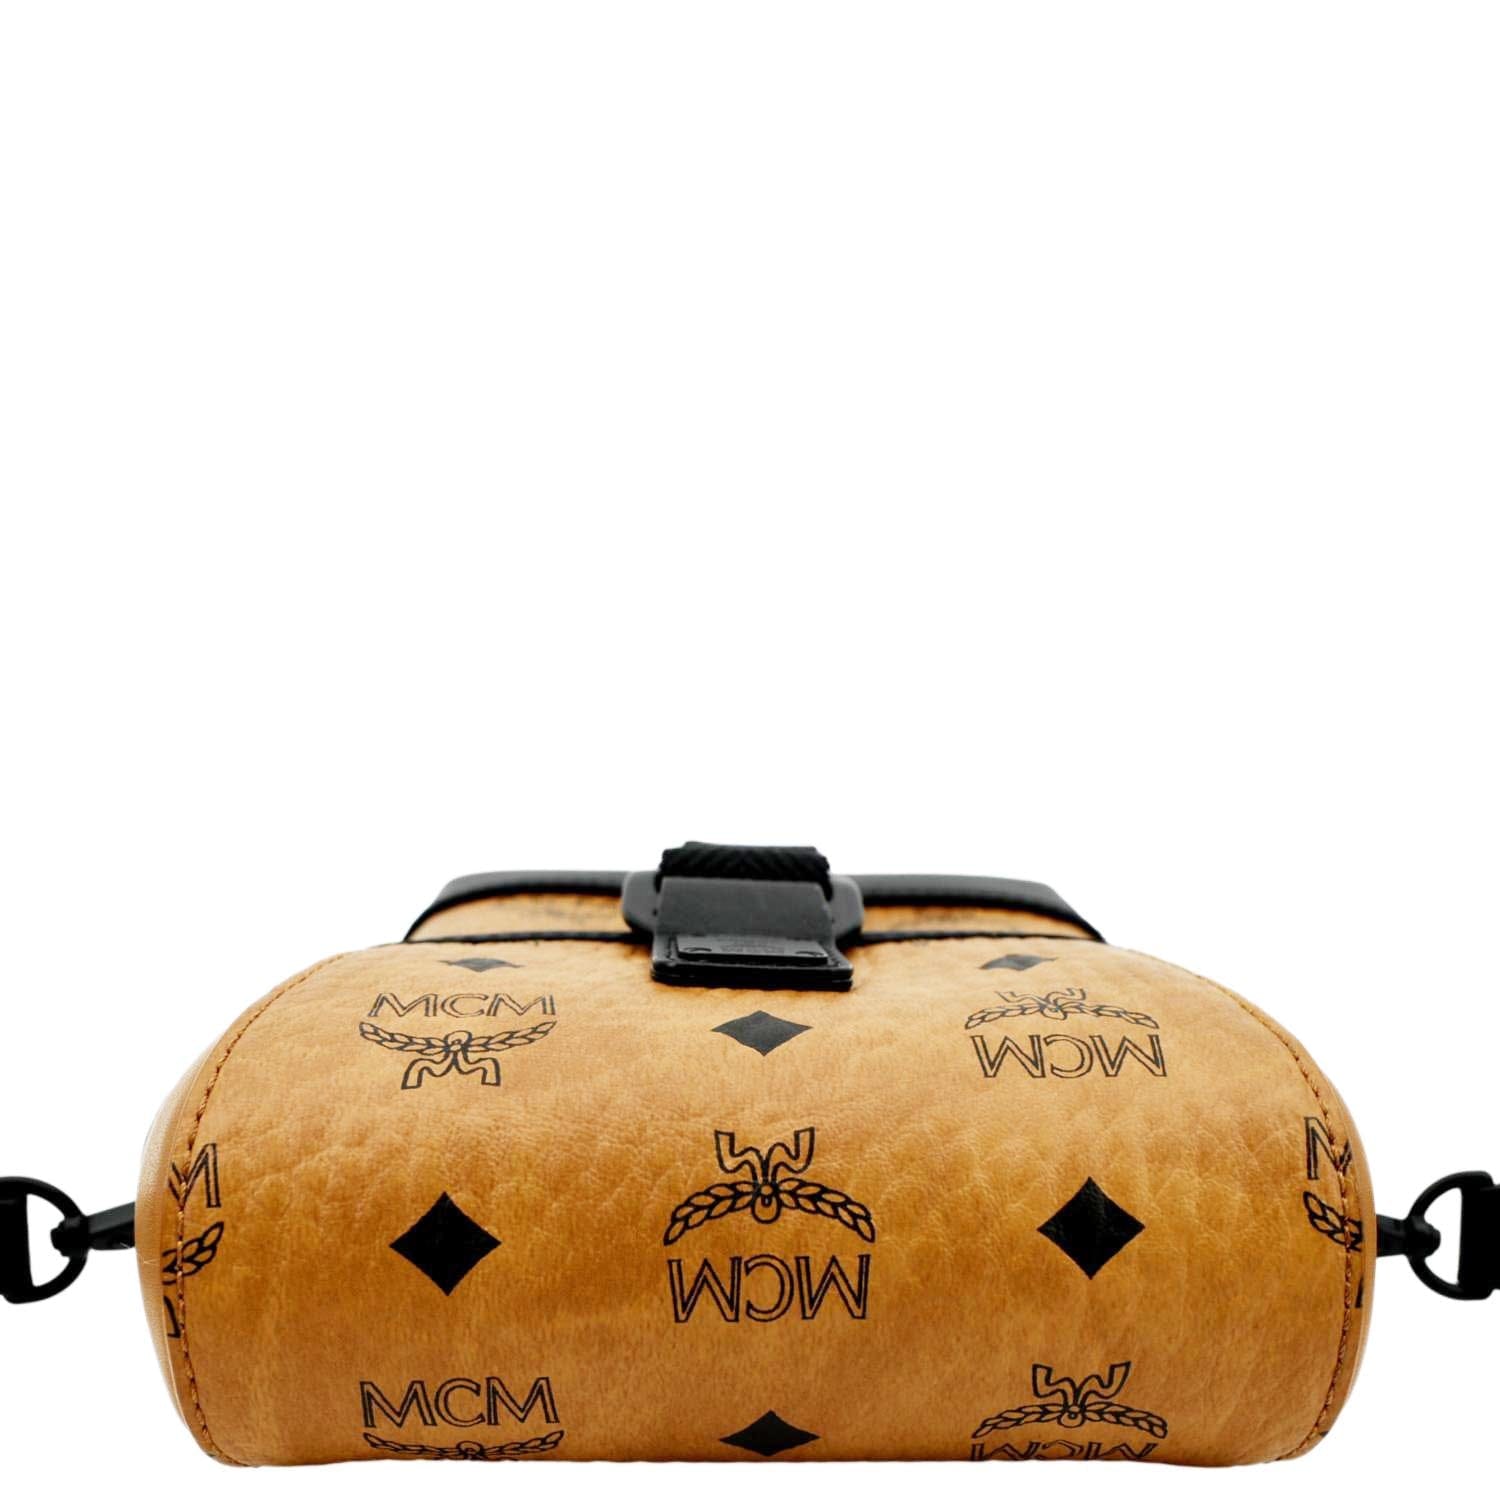 MCM Mini Visetos Portuna Bag - Blue Crossbody Bags, Handbags - W3049132